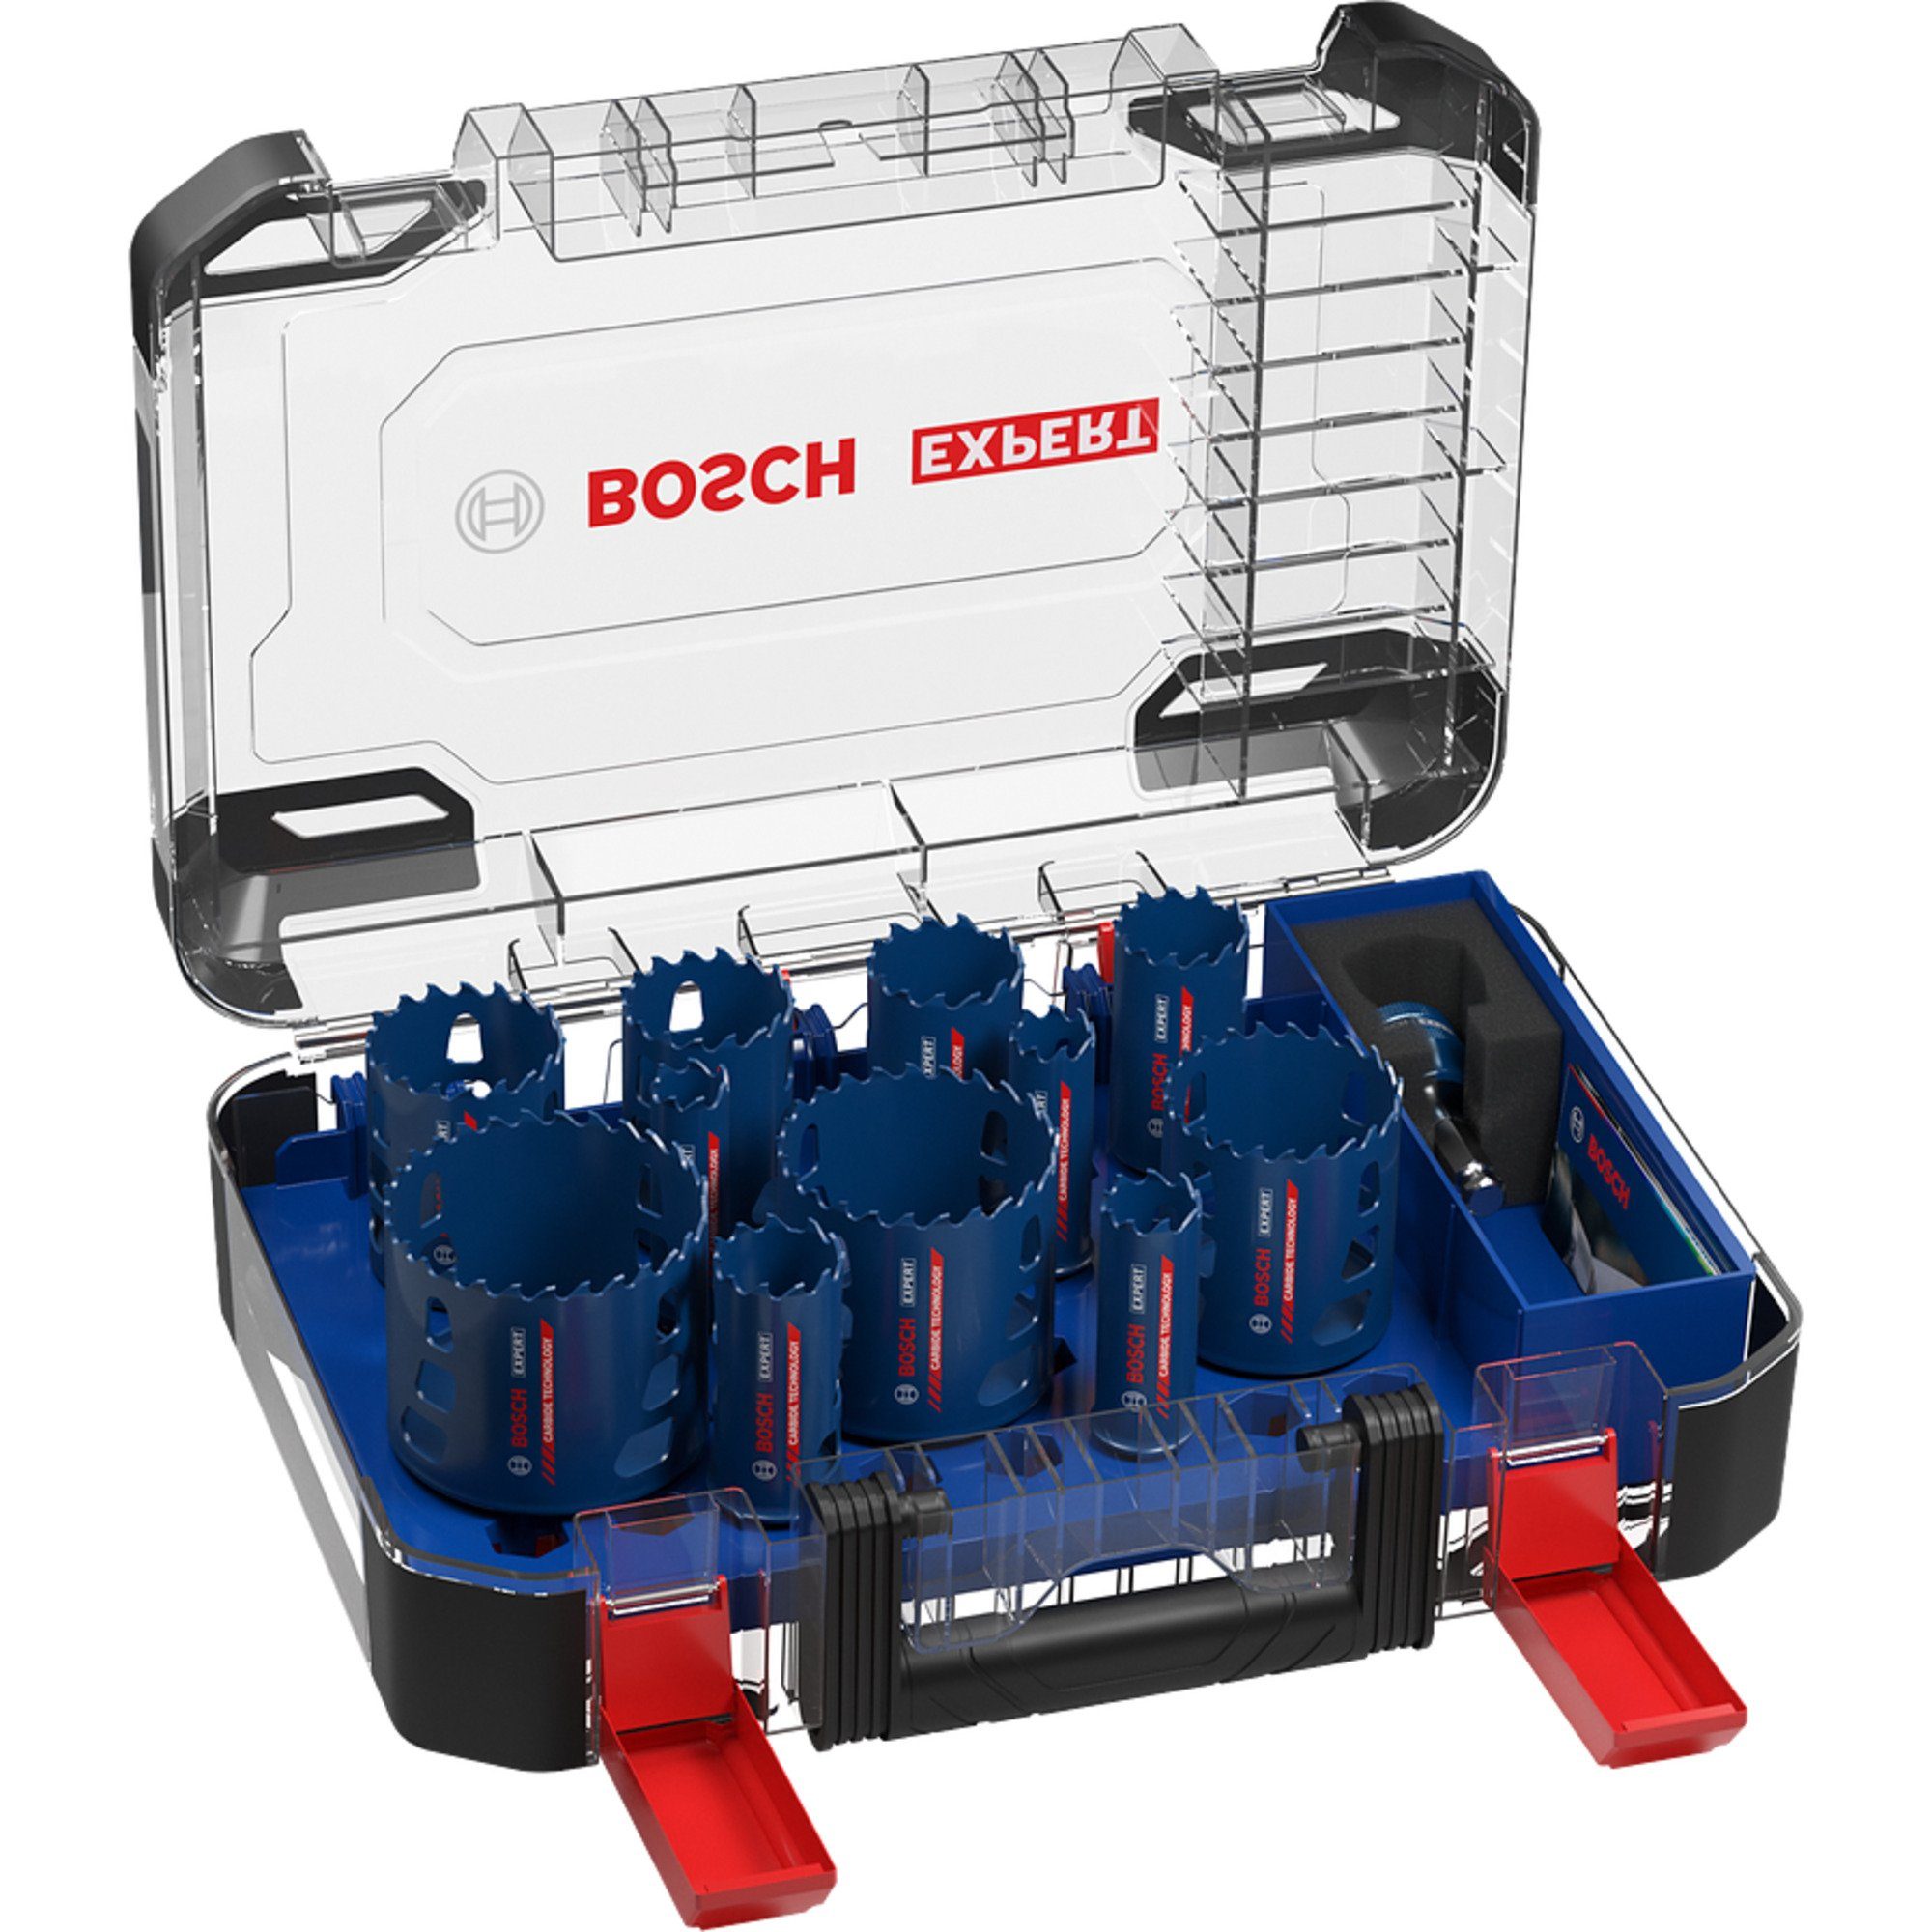 BOSCH Lochsäge Expert Tough Material, Expert Endurance for Heavy Duty  Lochsägen-Set - 20 - 76 mm - 13-teilig, Aufnahmesystem: Bosch  Power-Change-Adapter, Standard-Bohrfutter